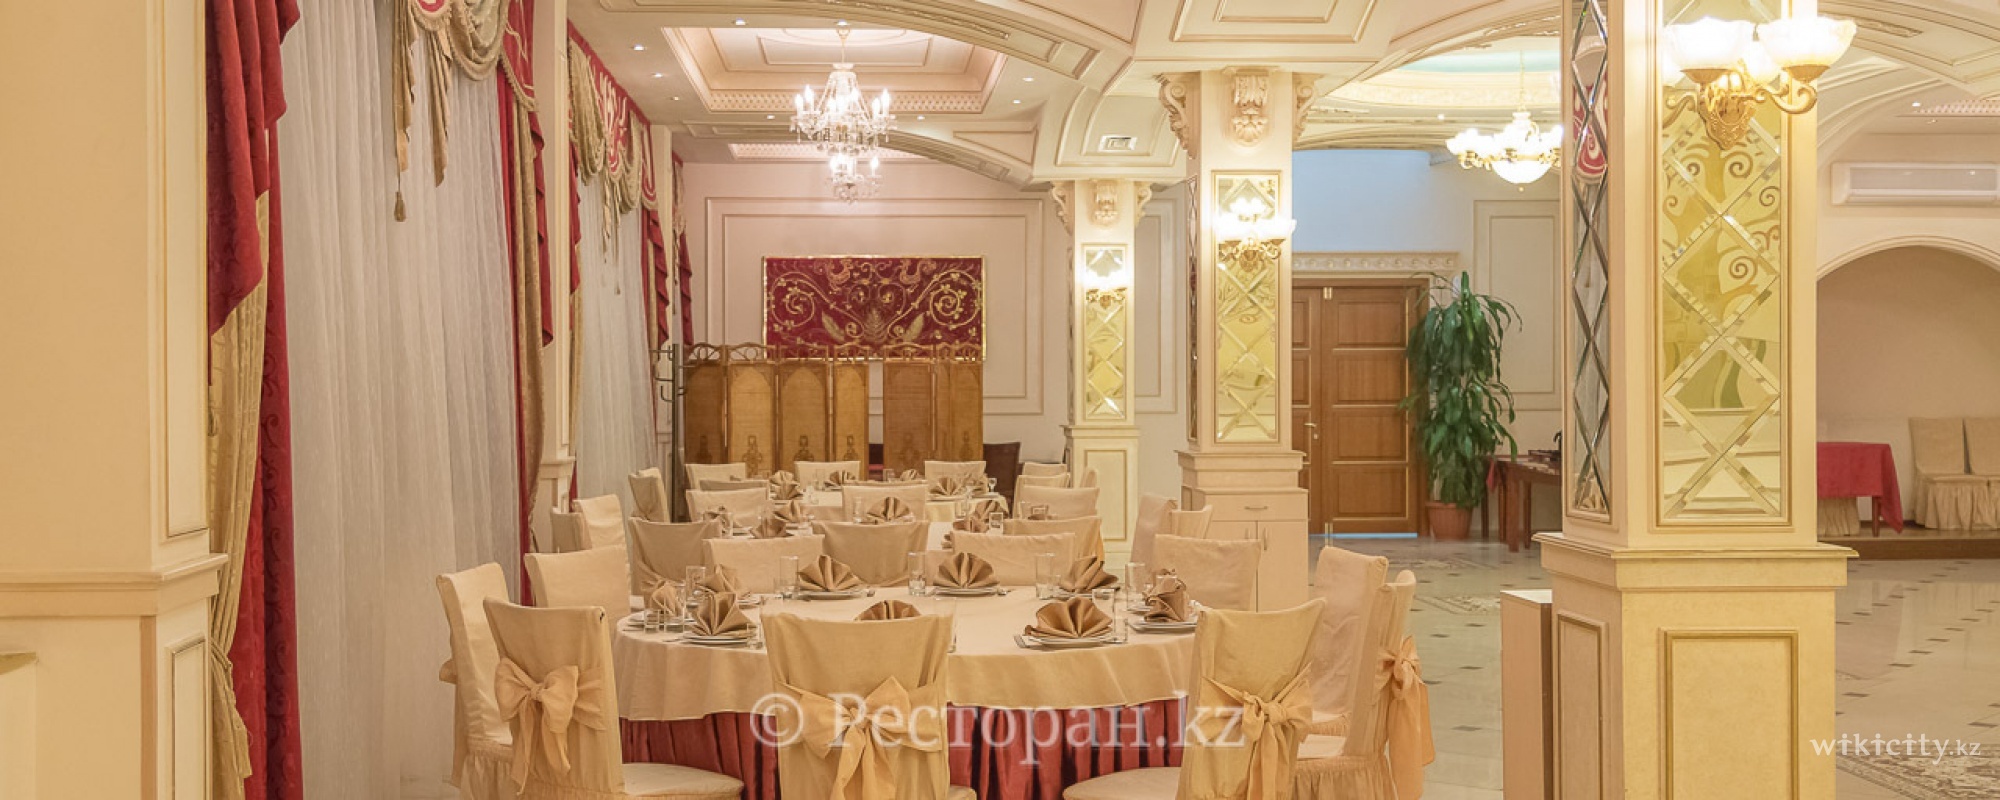 Фото Алтын Холл - Almaty. малый зал 130 гостей